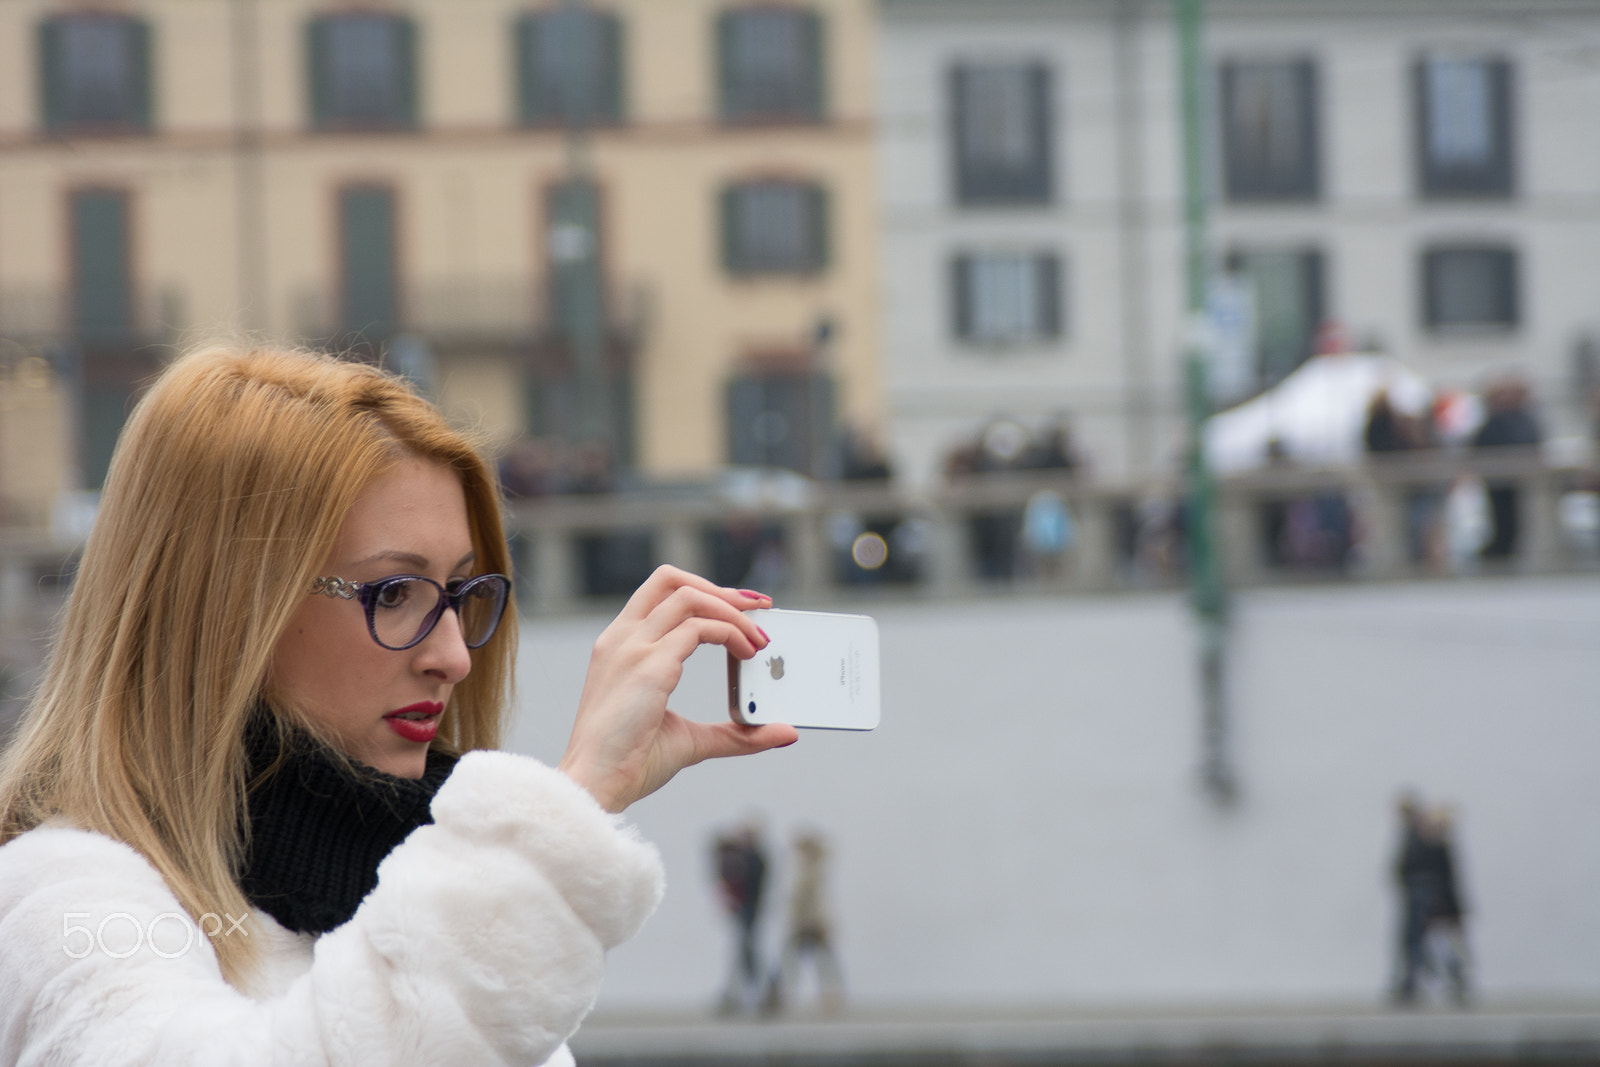 Nikon D7100 + AF Zoom-Nikkor 28-105mm f/3.5-4.5D IF sample photo. Selfie photography